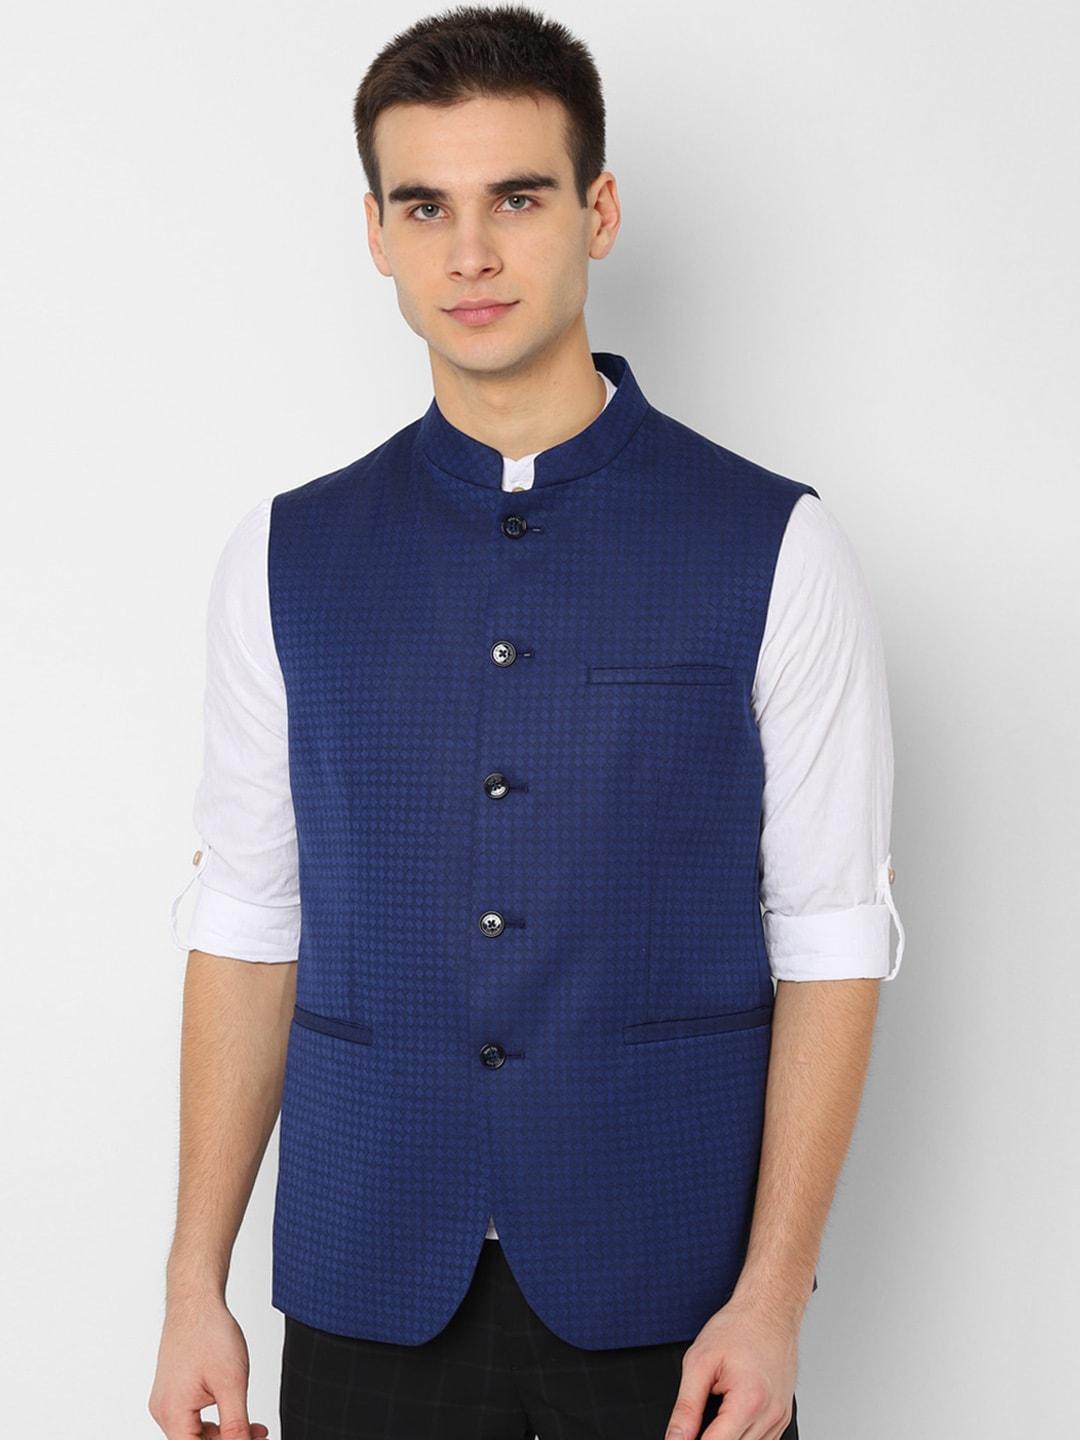 allen solly men navy blue slim fit woven design nehru jacket